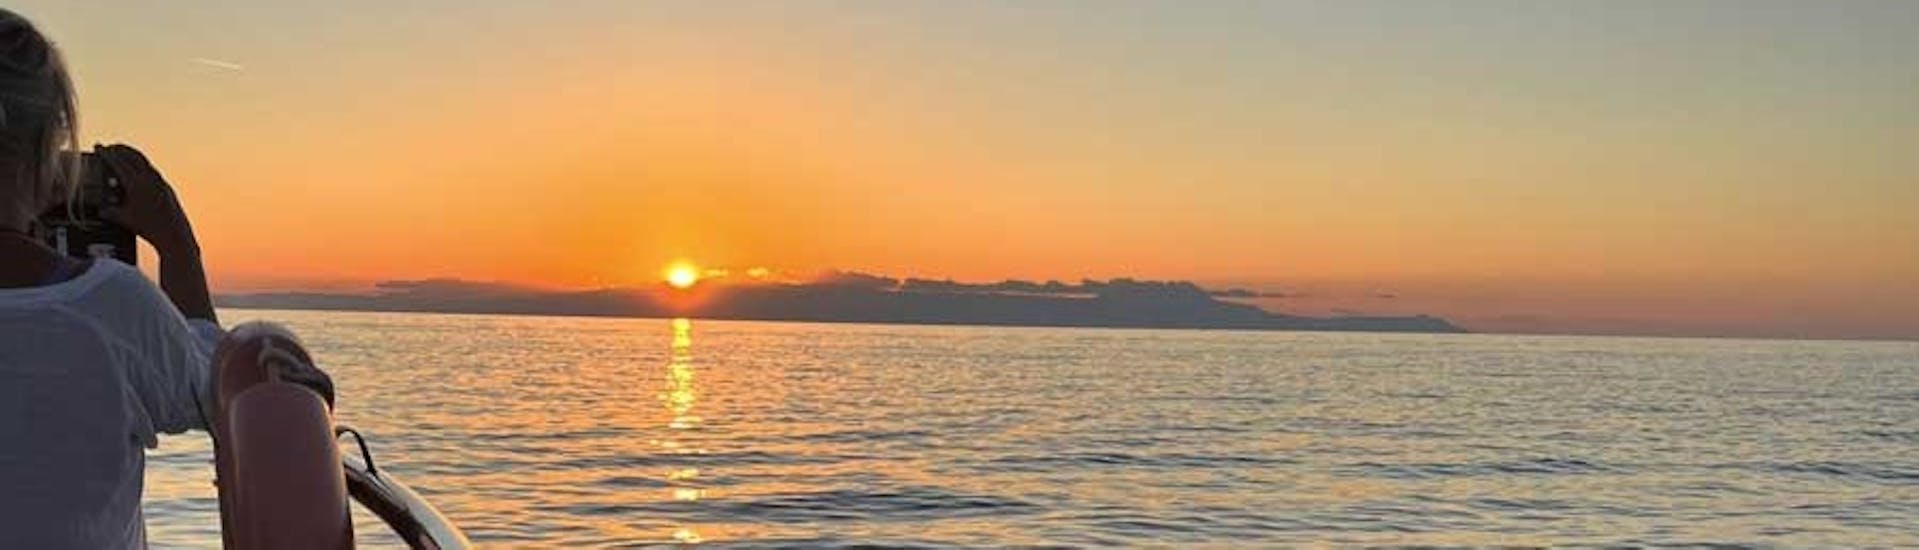 Una mujer disfruta de la puesta de sol en el paseo en barco con fondo de cristal a Lazaretta al atardecer.